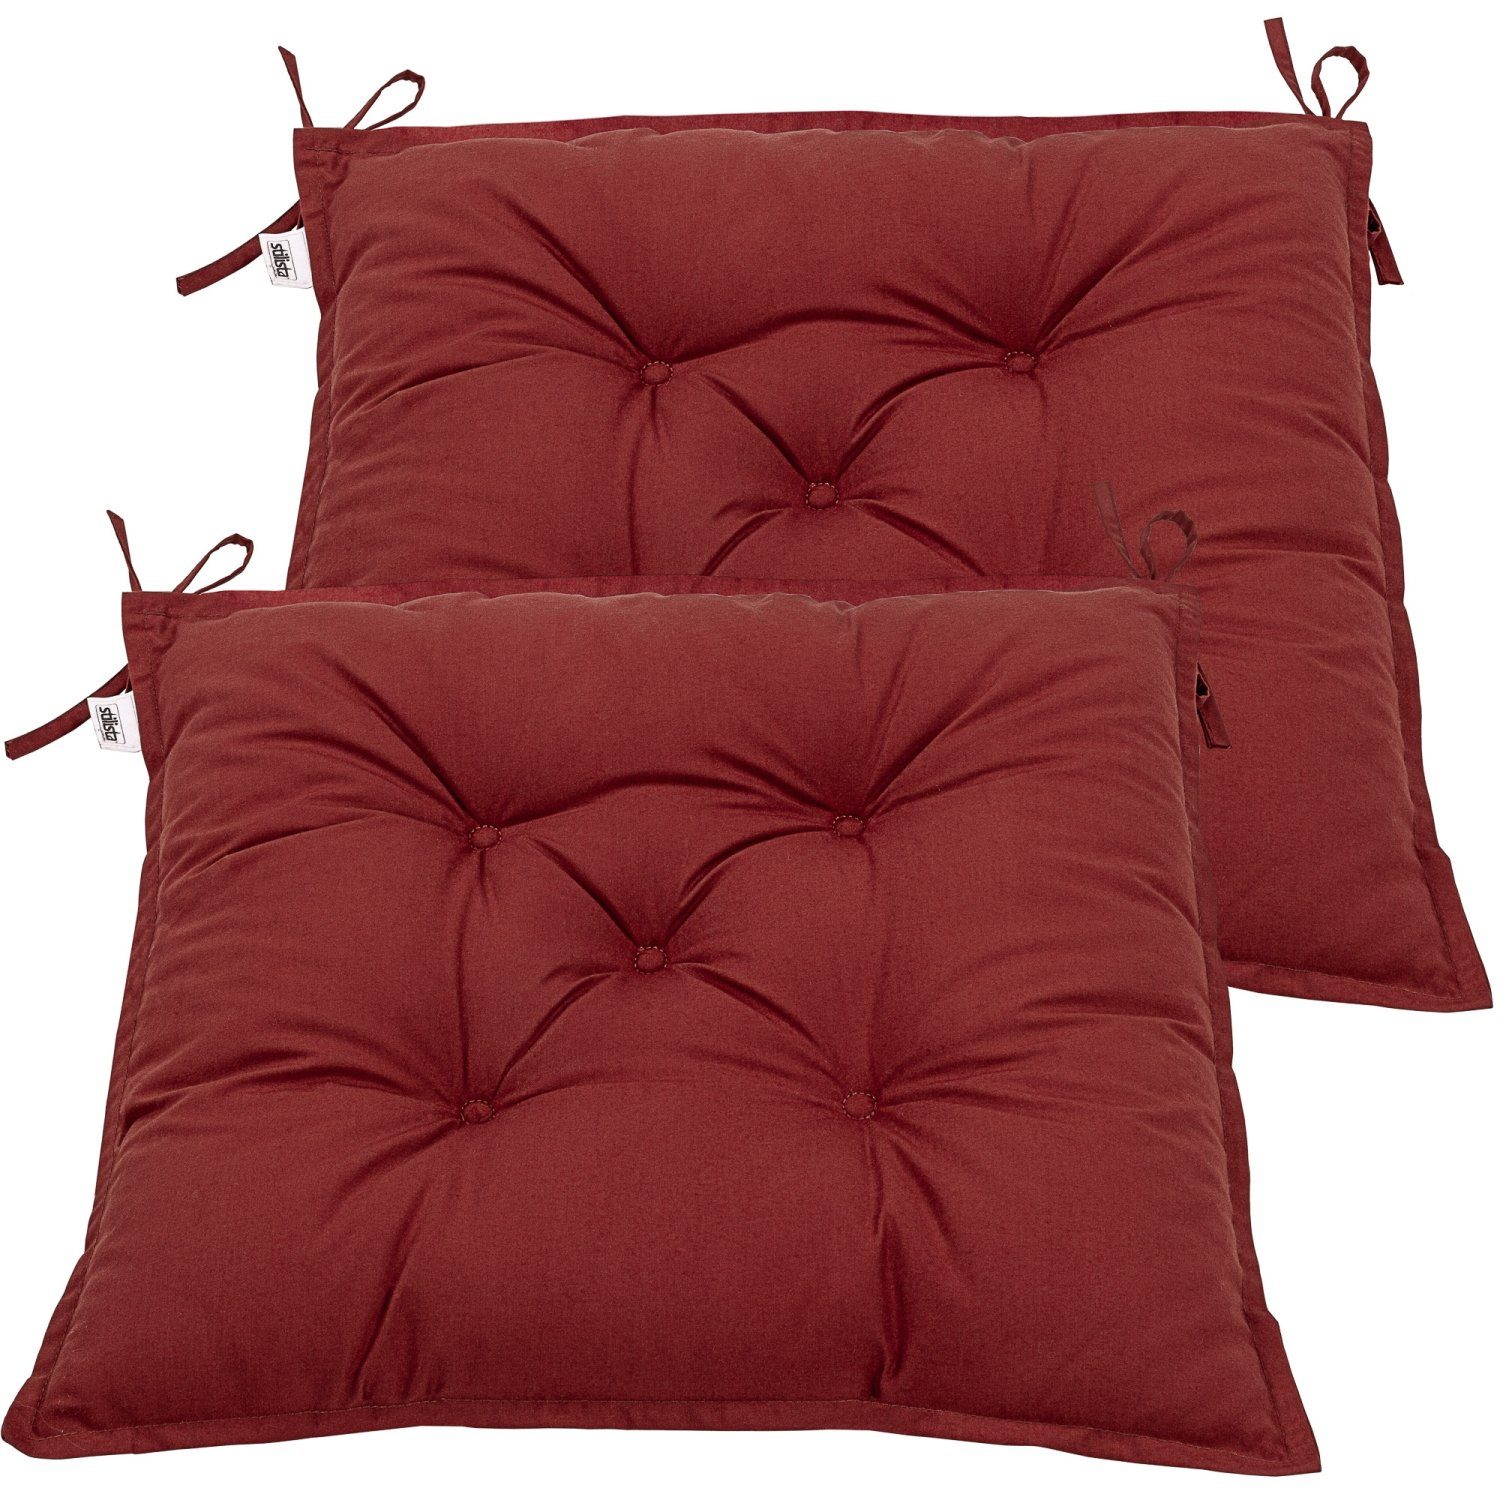 Stuhlkissen Sitzkissen Dekokissen Stuhlauflage Sitzauflage Braun Rot 50x50 cm 